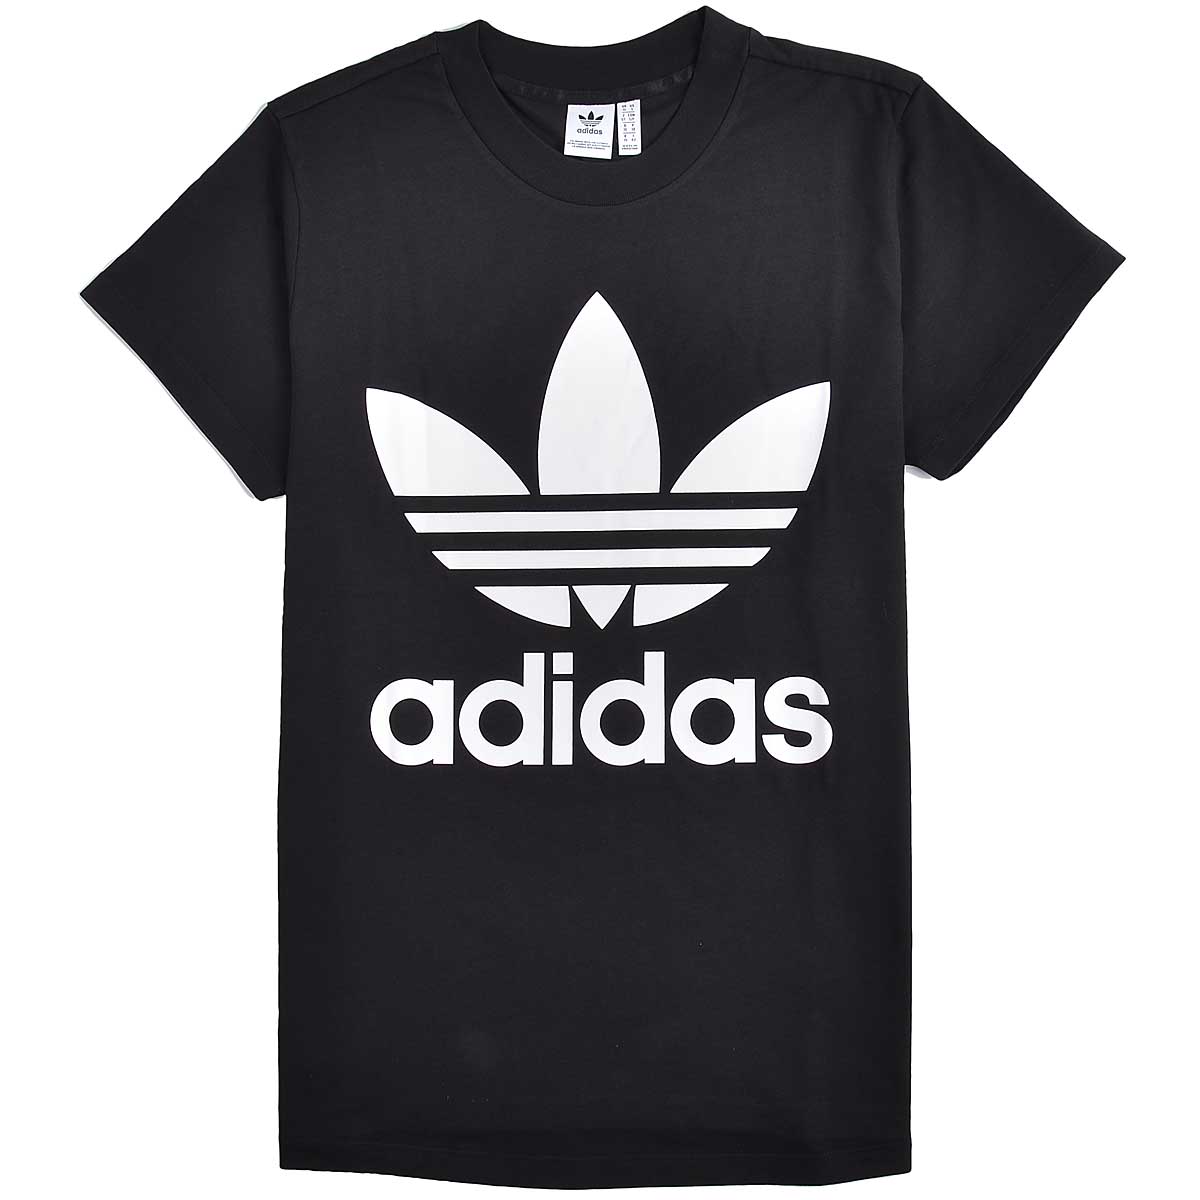 Адидас на английском. Adidas Originals big Trefoil. Adidas t9956. T-Shirt adidas Black. Футболка adidas черная.